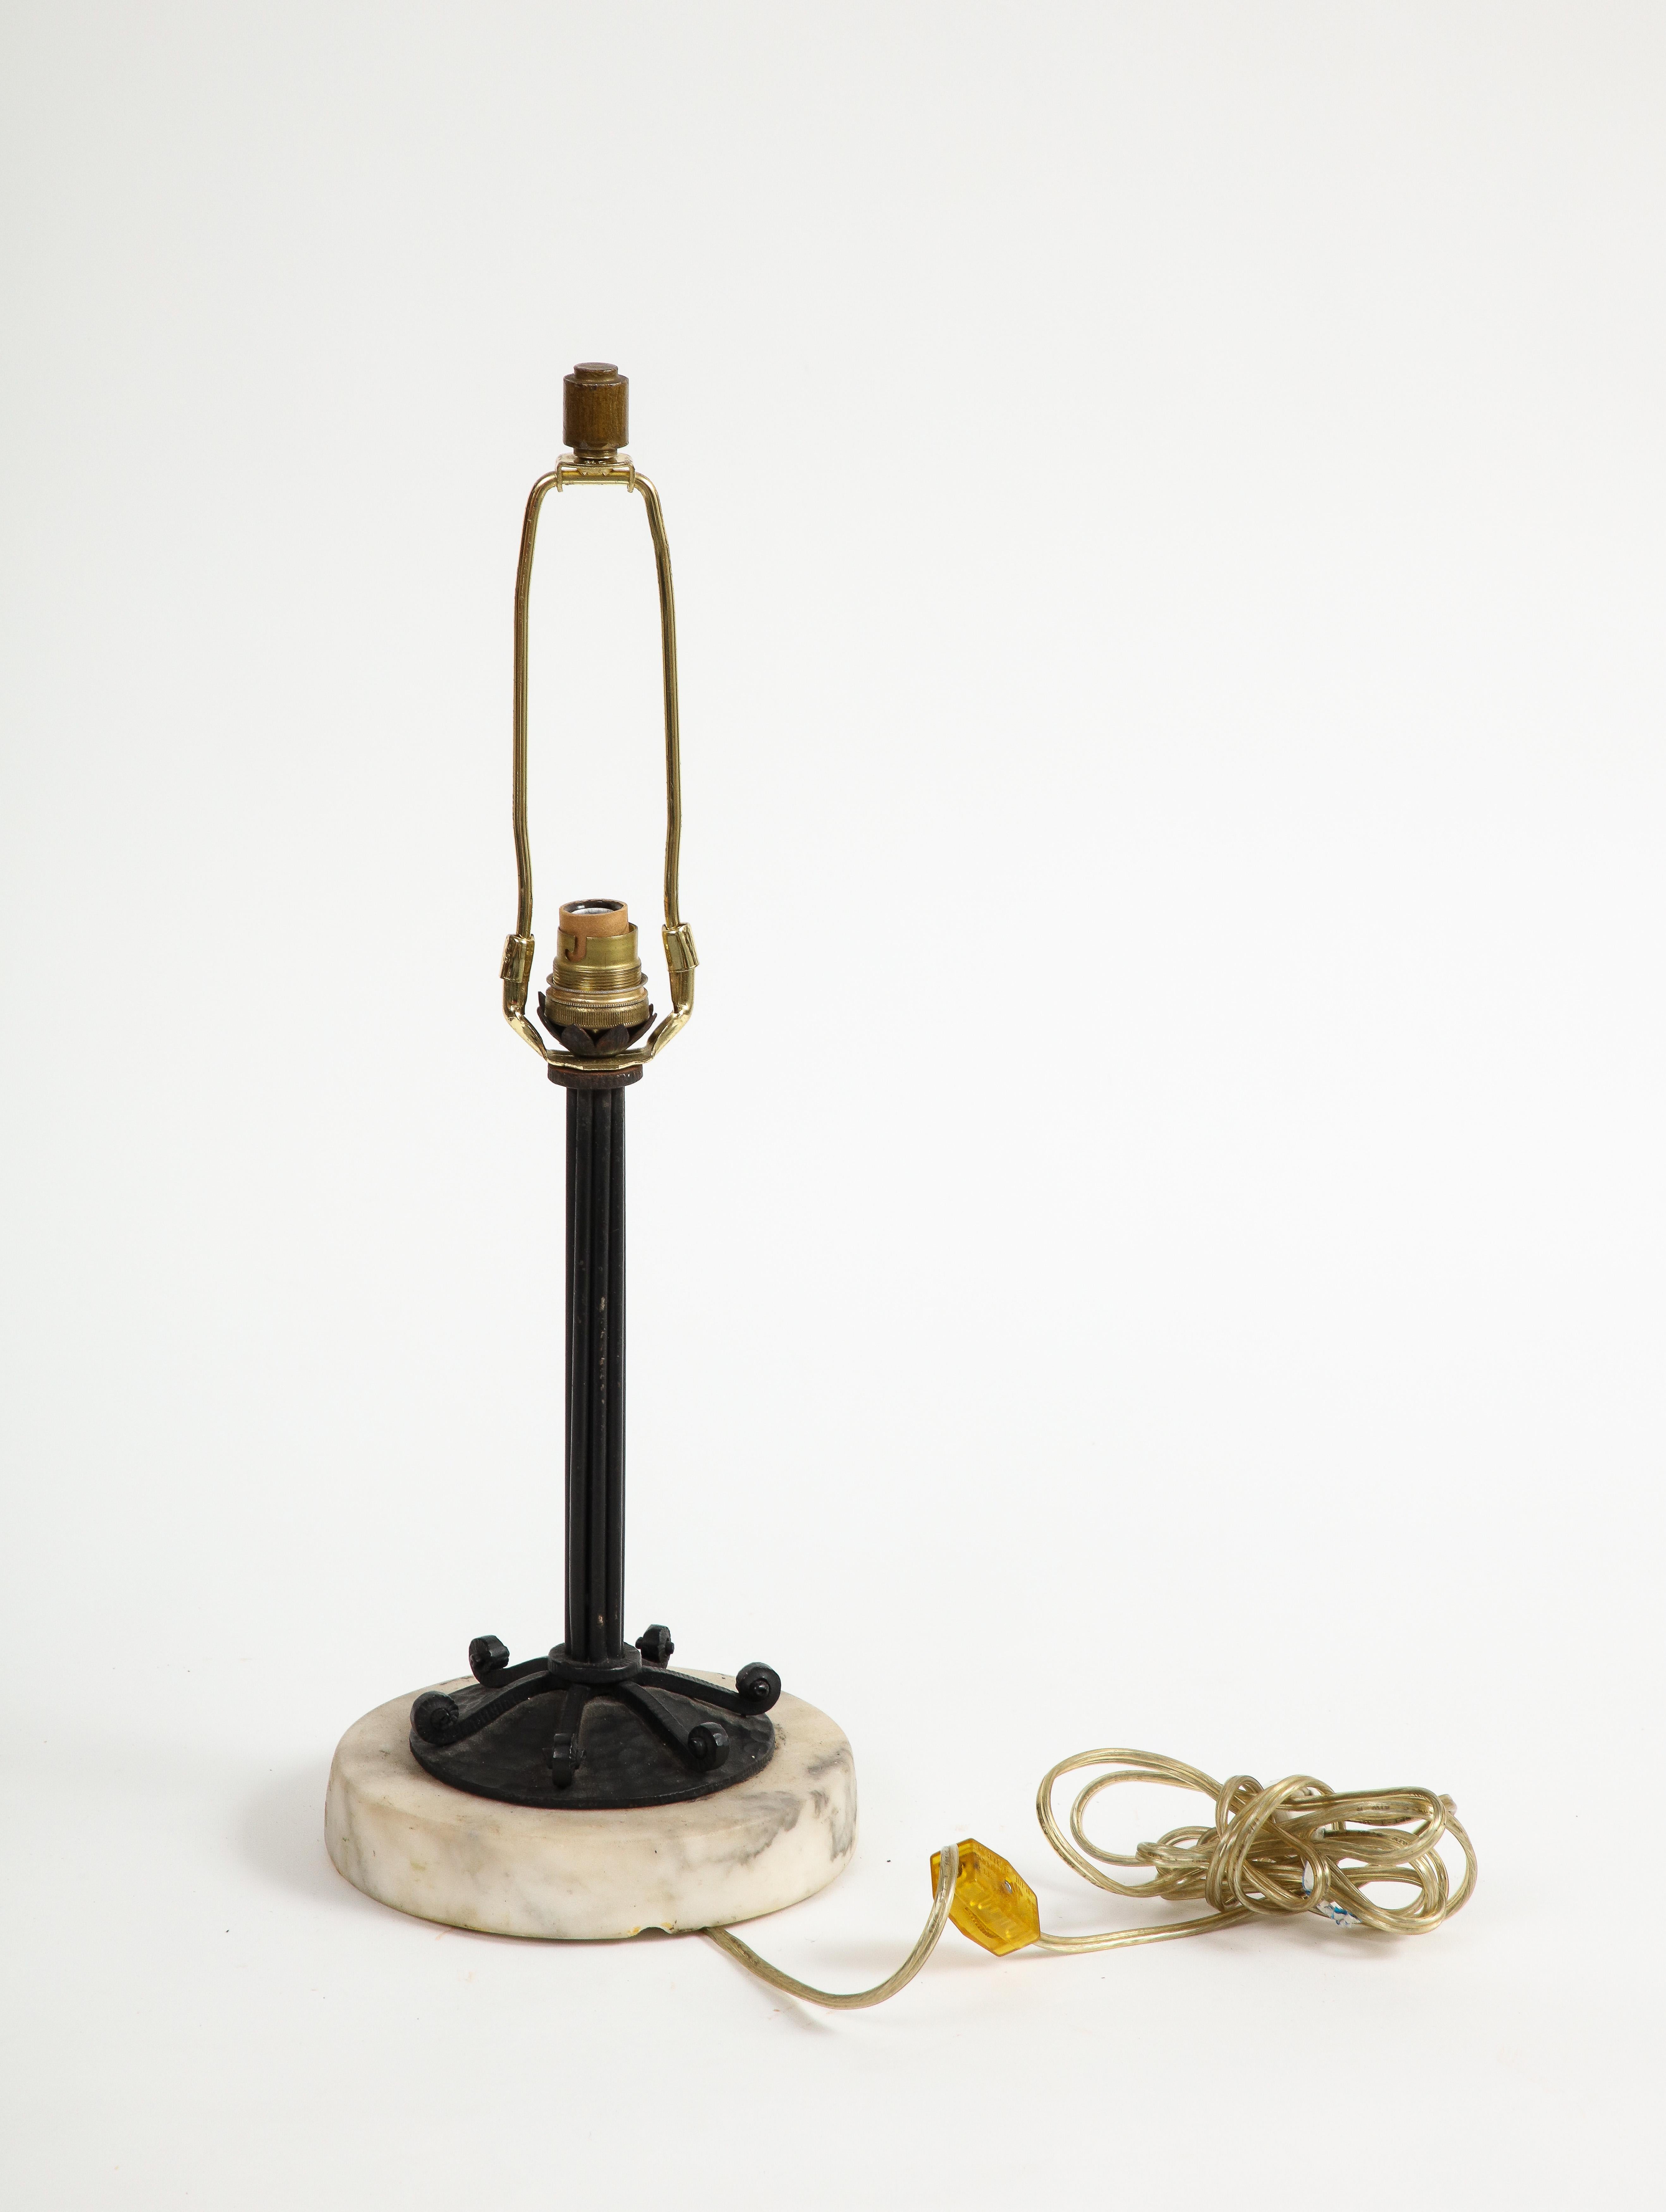 Lampe de table en fer forgé français du 20e siècle sur base en marbre, présentant une décoration de feuilles à la base de la douille et des lignes enroulées en fer forgé sur la base de la lampe. 